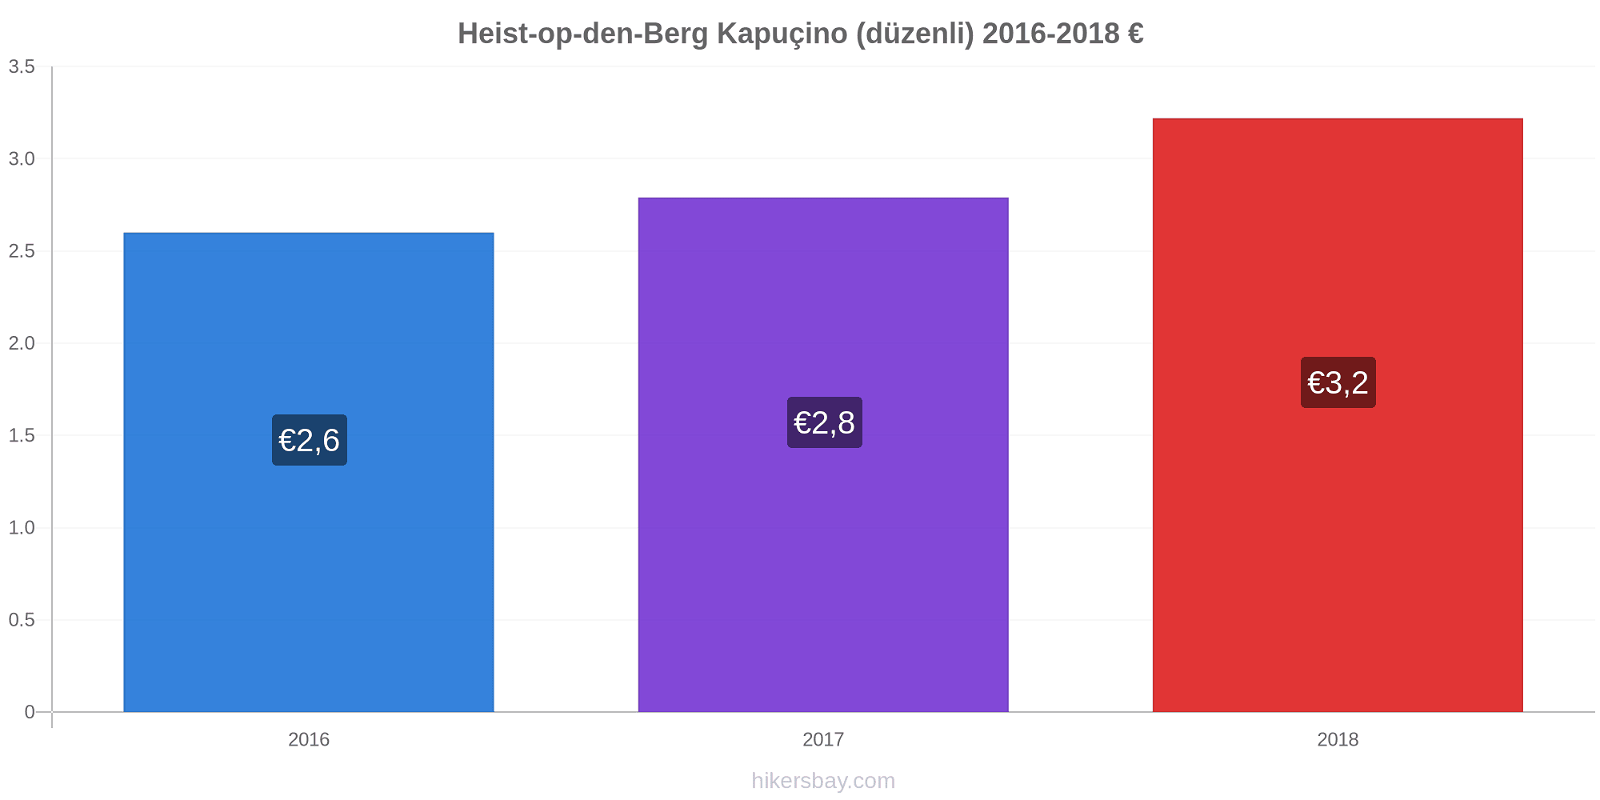 Heist-op-den-Berg fiyat değişiklikleri Kapuçino (düzenli) hikersbay.com